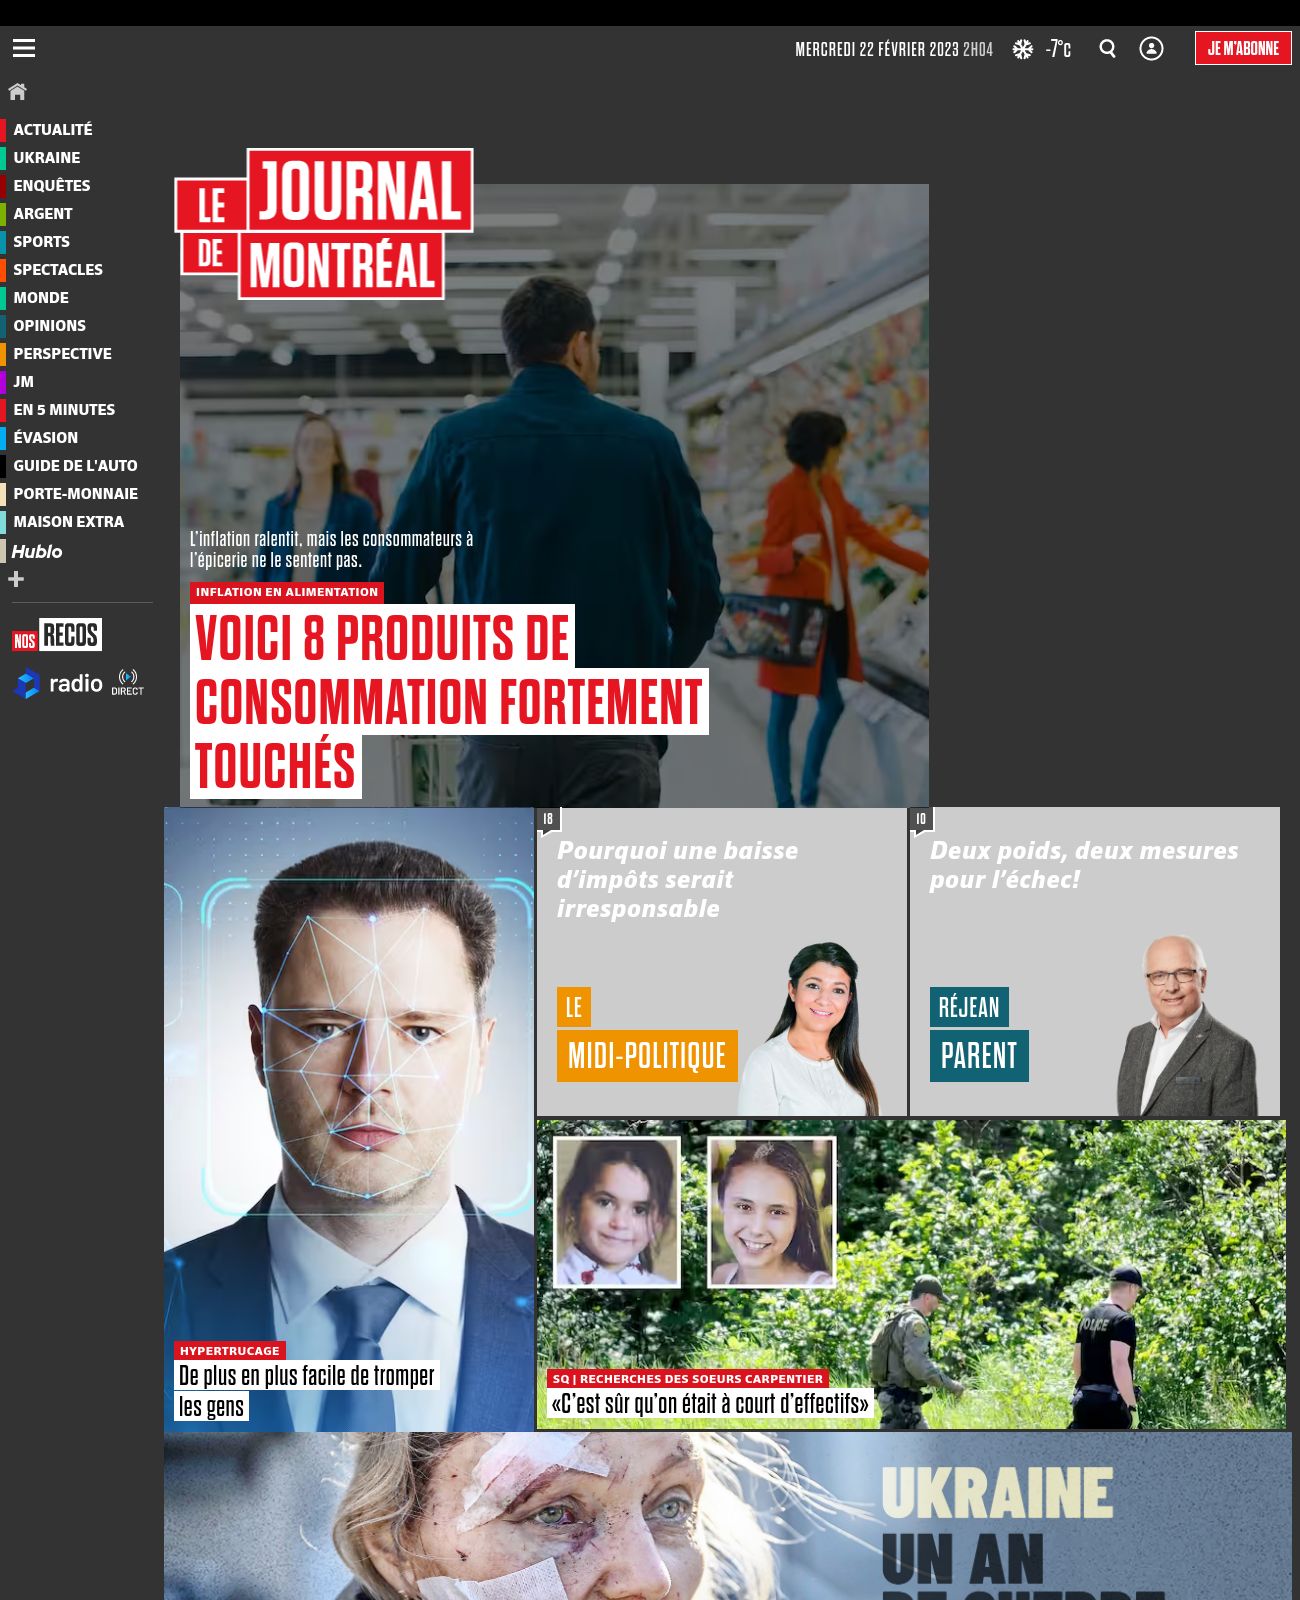 La Journal de MontrÃ©al at 2023-02-21 21:18:40-05:00 local time